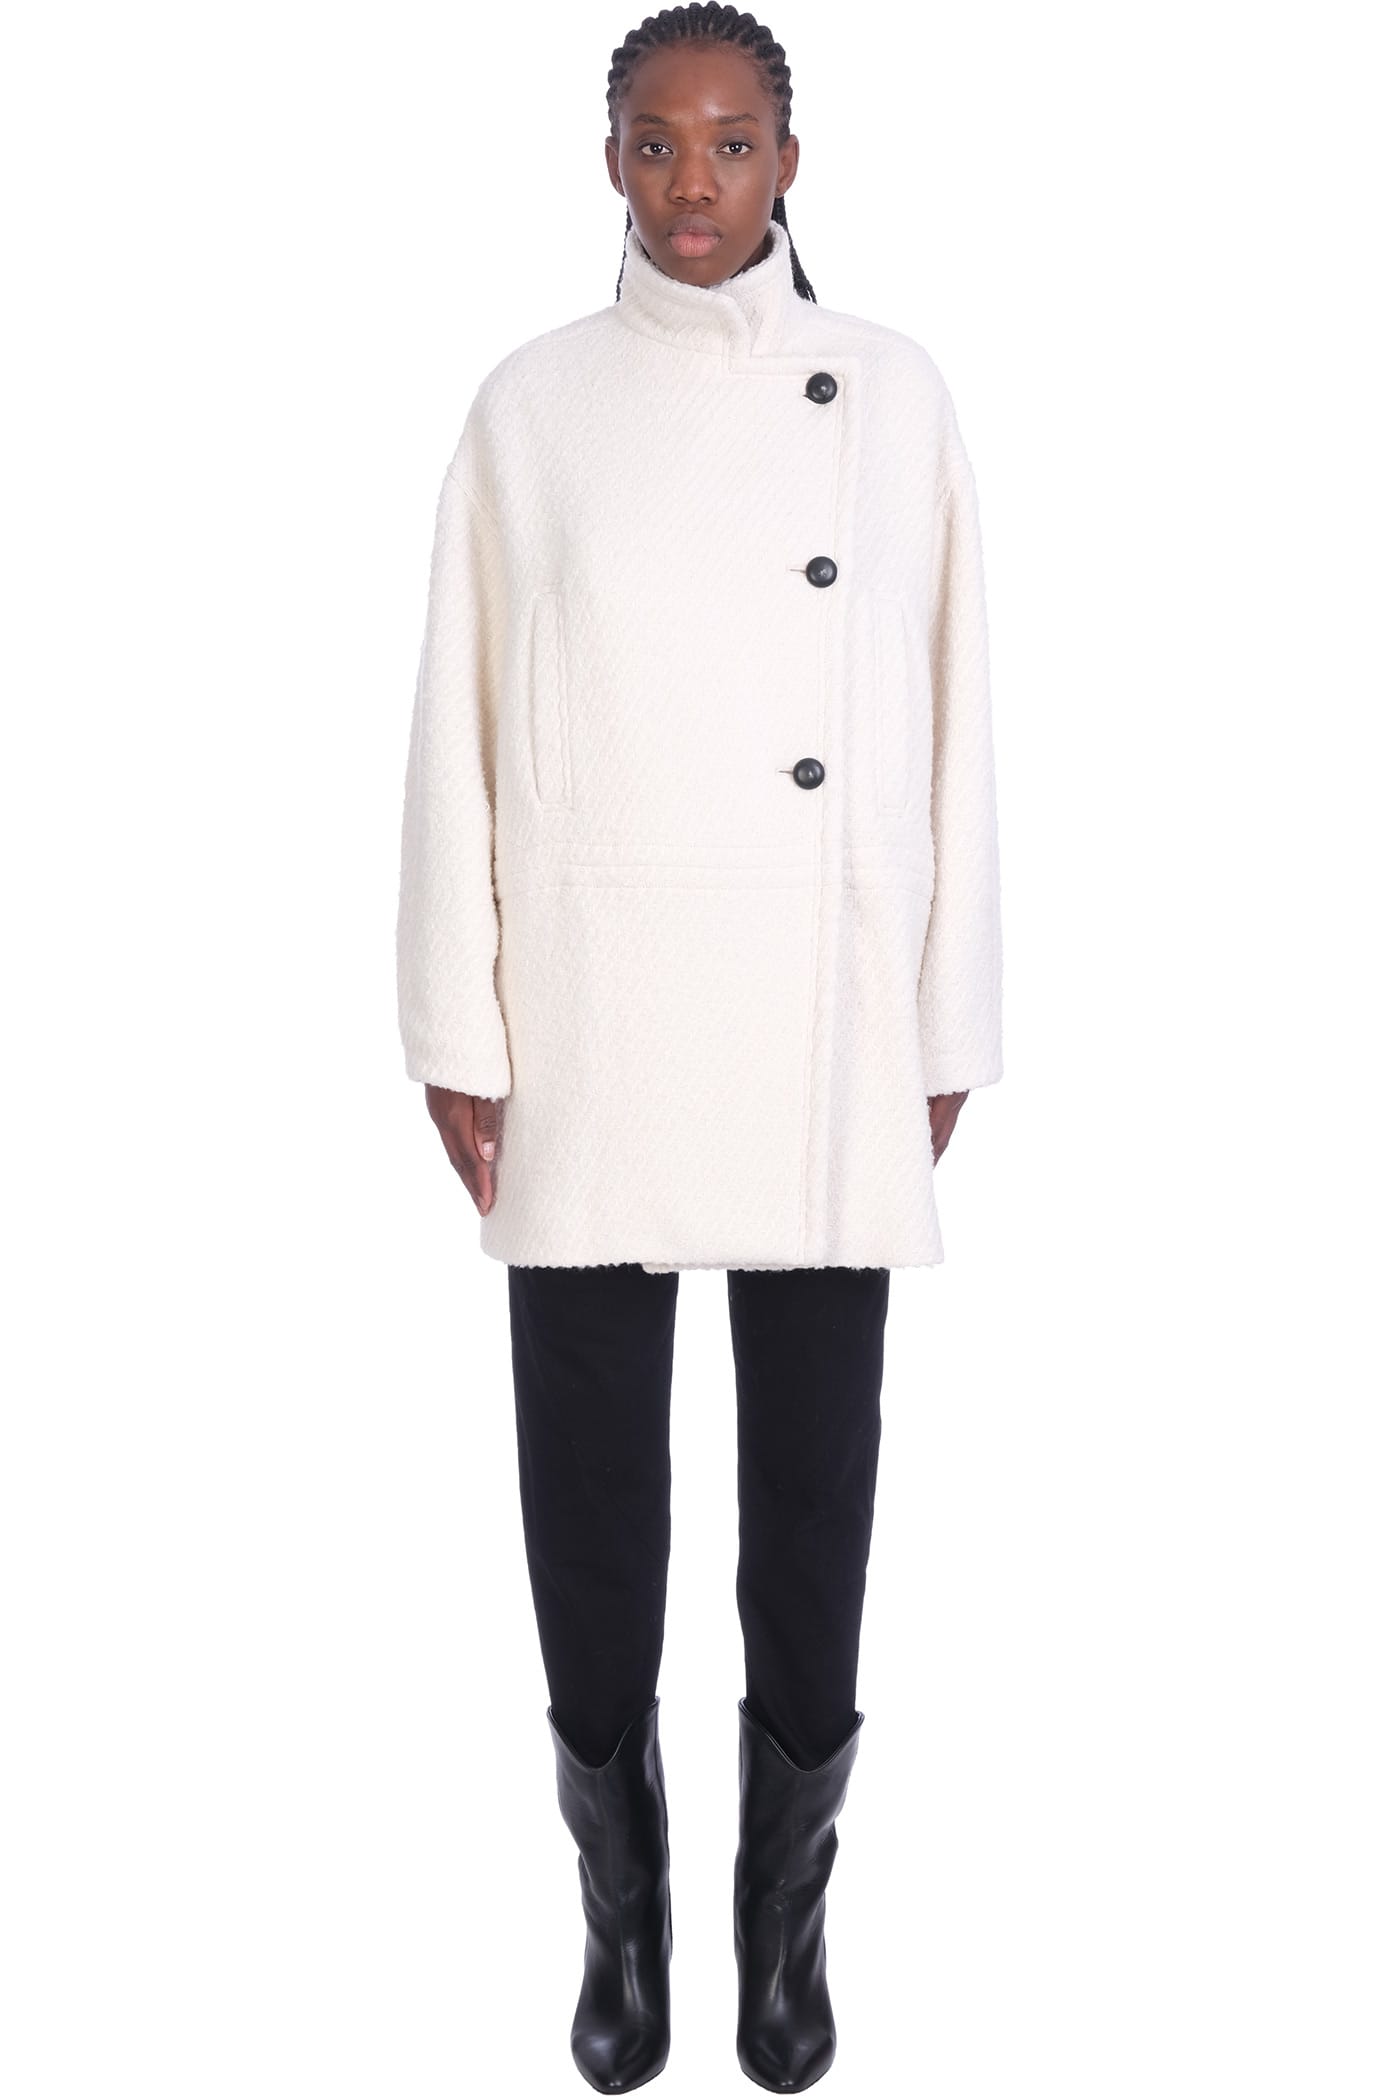 IRO olfas coat in white cotton